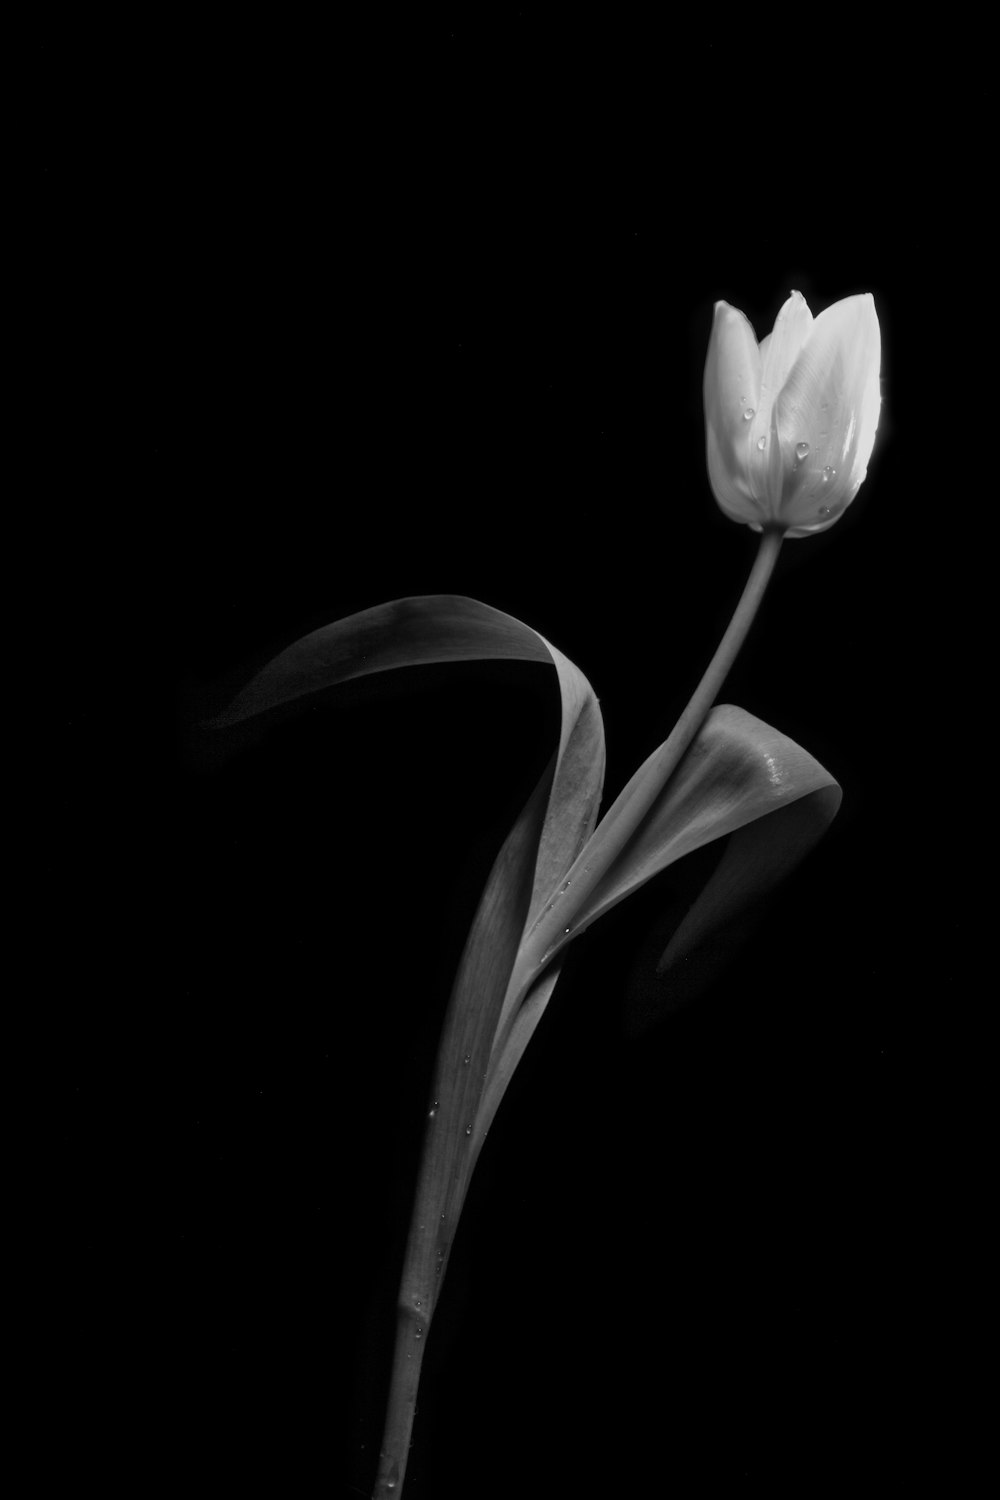 Hình ảnh hoa trắng trên nền đen miễn phí: Tận hưởng màu trắng trong trẻo của hoa trên nền đen đầy tinh tế, đầy cá tính trên thiết bị của bạn. Bạn sẽ làm mới không gian sống và làm việc của mình và đem đến một cảm giác mới lạ, thú vị. Hãy tải ngay hình ảnh trên và cùng khám phá thế giới màu sắc đầy phong phú.